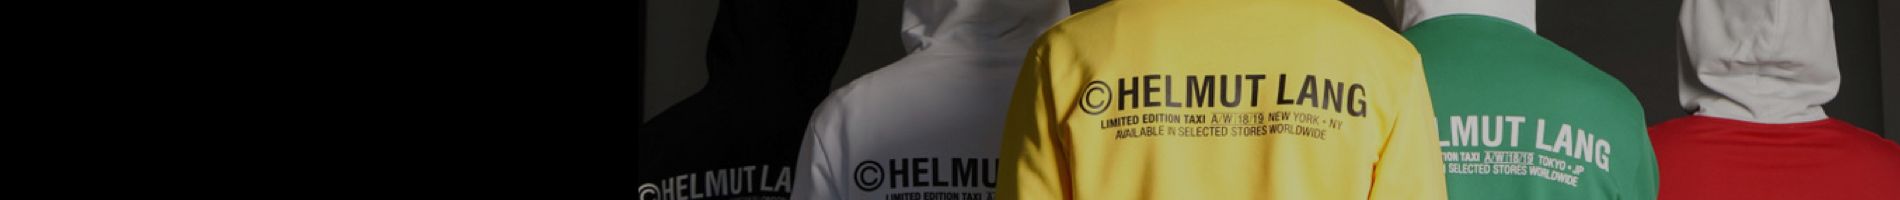 Helmut Lang Men's Bombers Banner